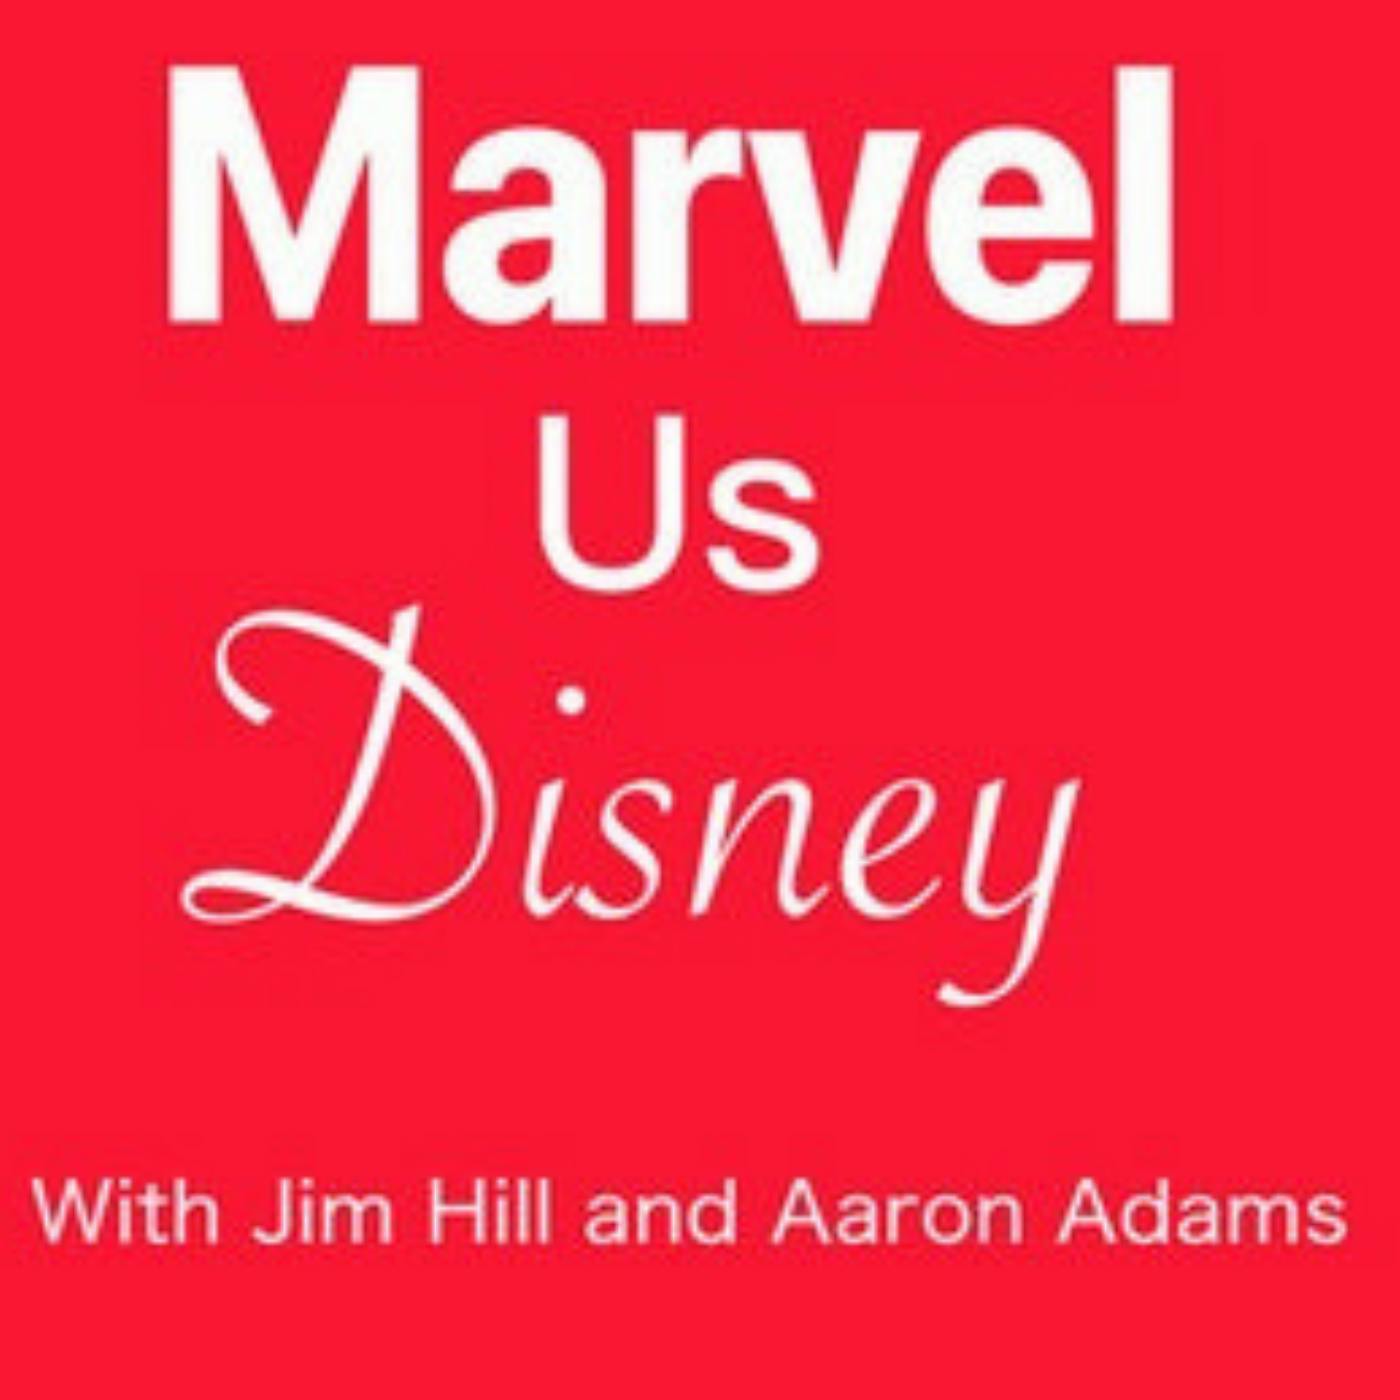 Marvel Us Disney Episode 137: “Ms. Marvel” is off to a marvelous start